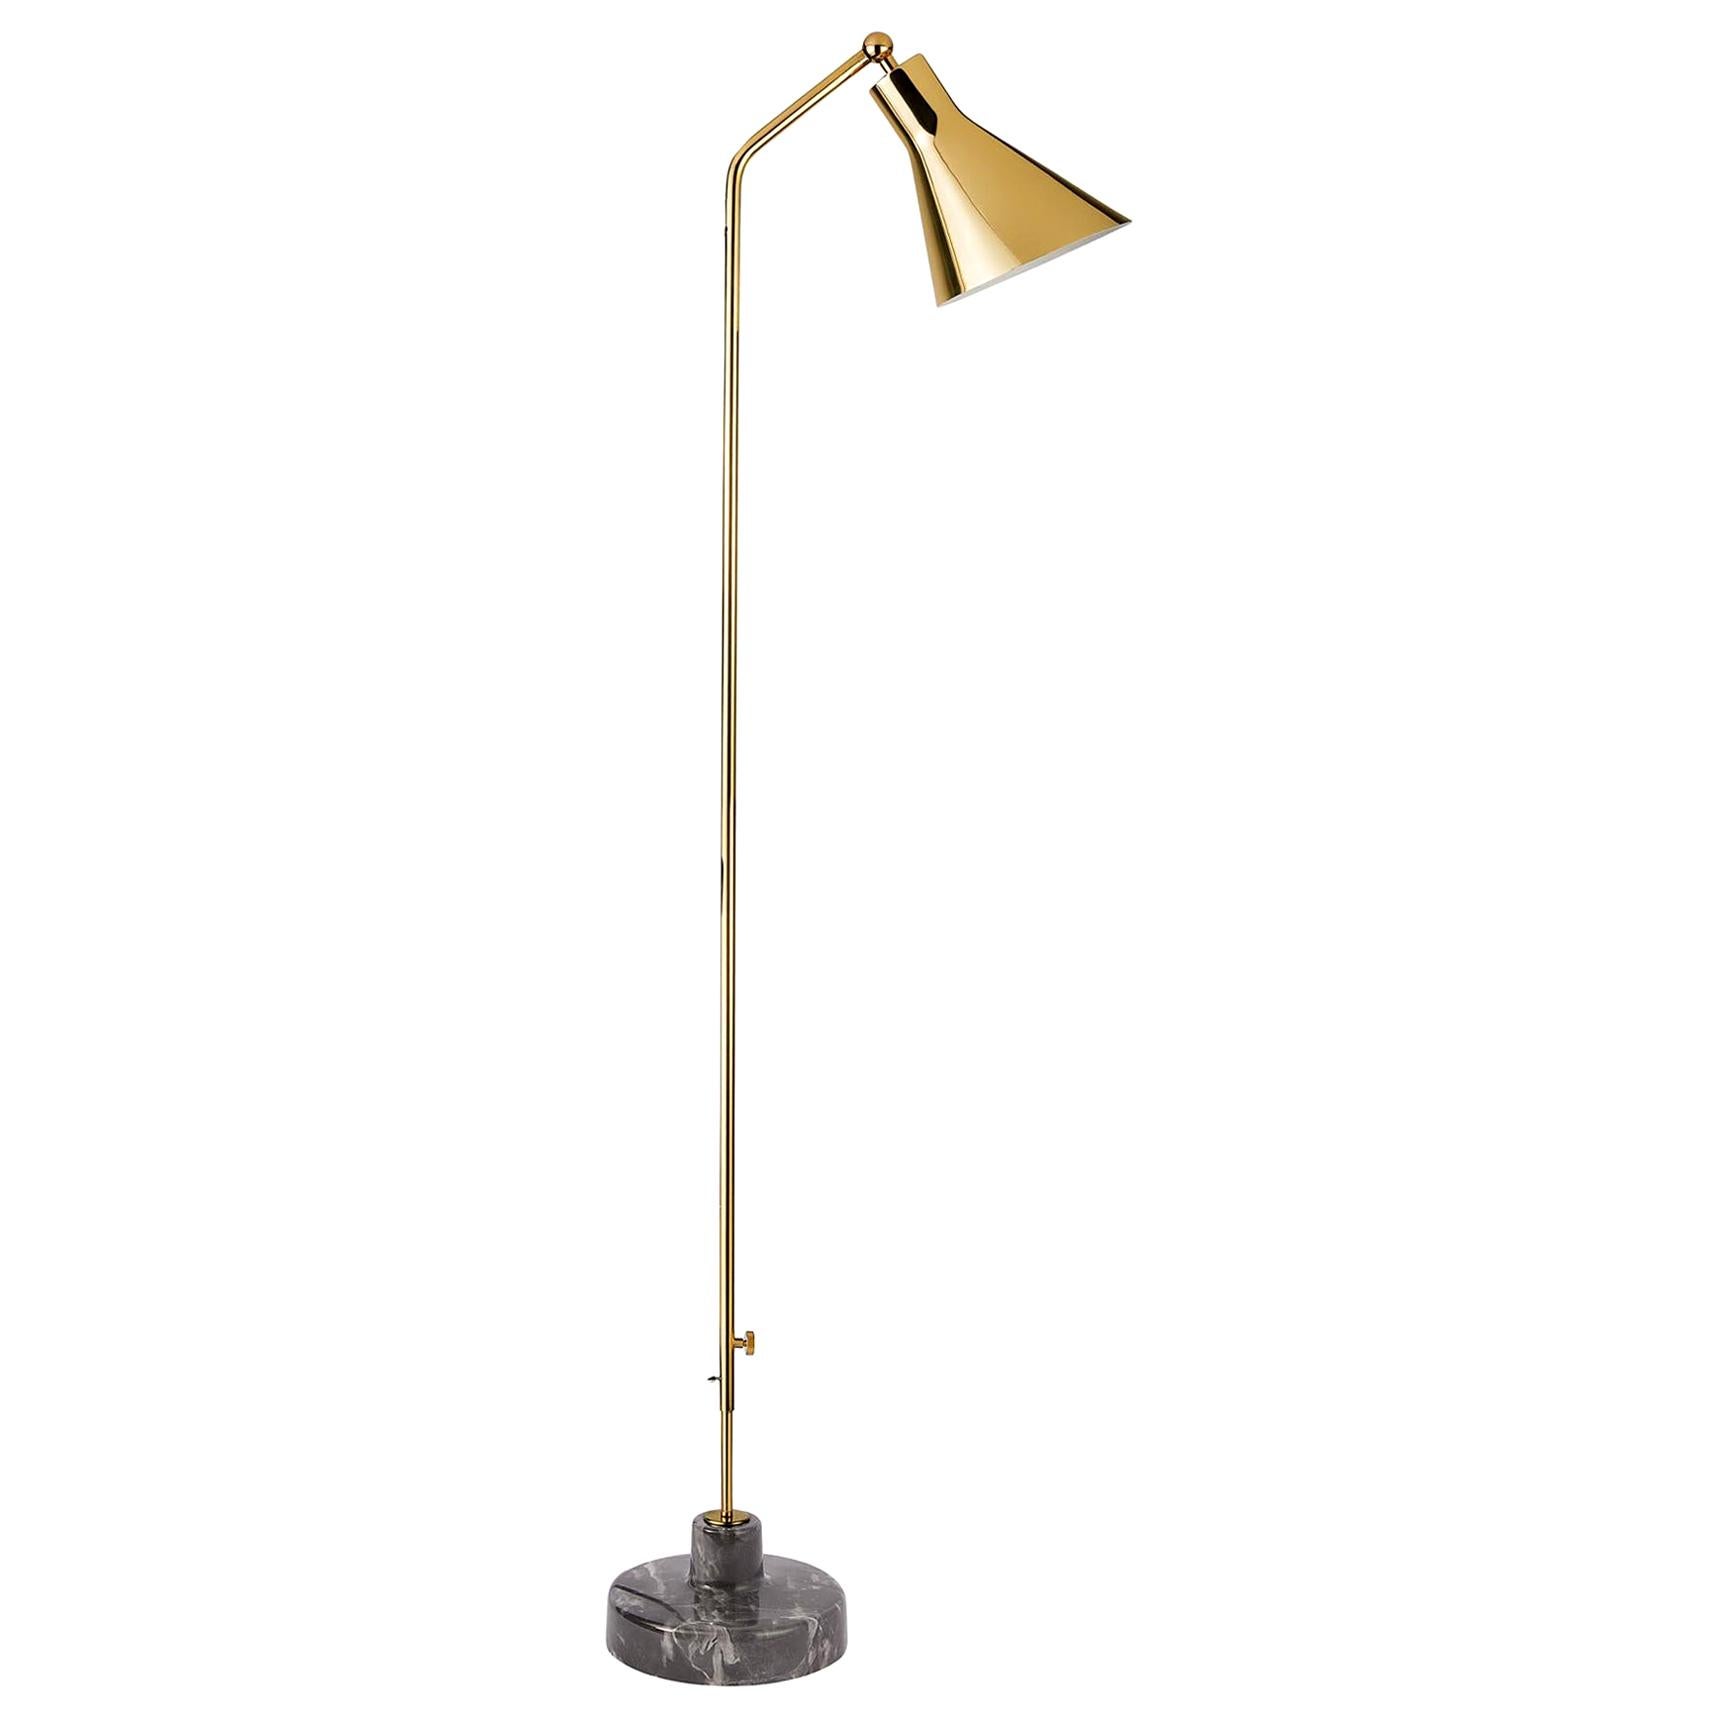 Ignazio Gardella Alzabile Floor Lamp in Brass and Gray Marble